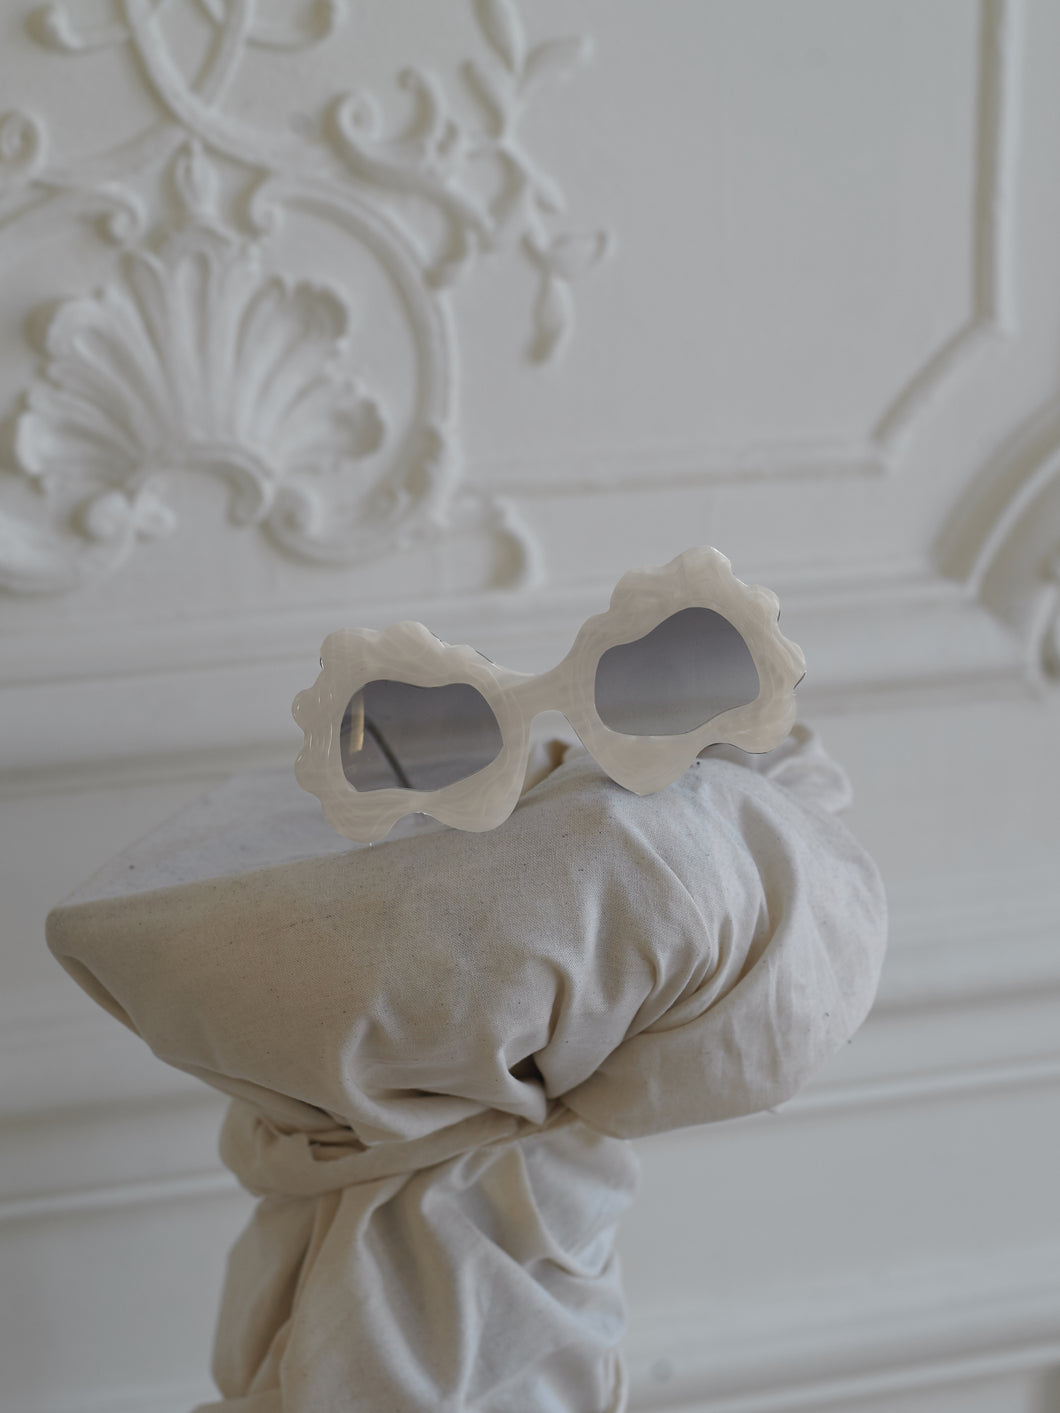 Artisanal Nuage Sunglasses - Pearl Moon